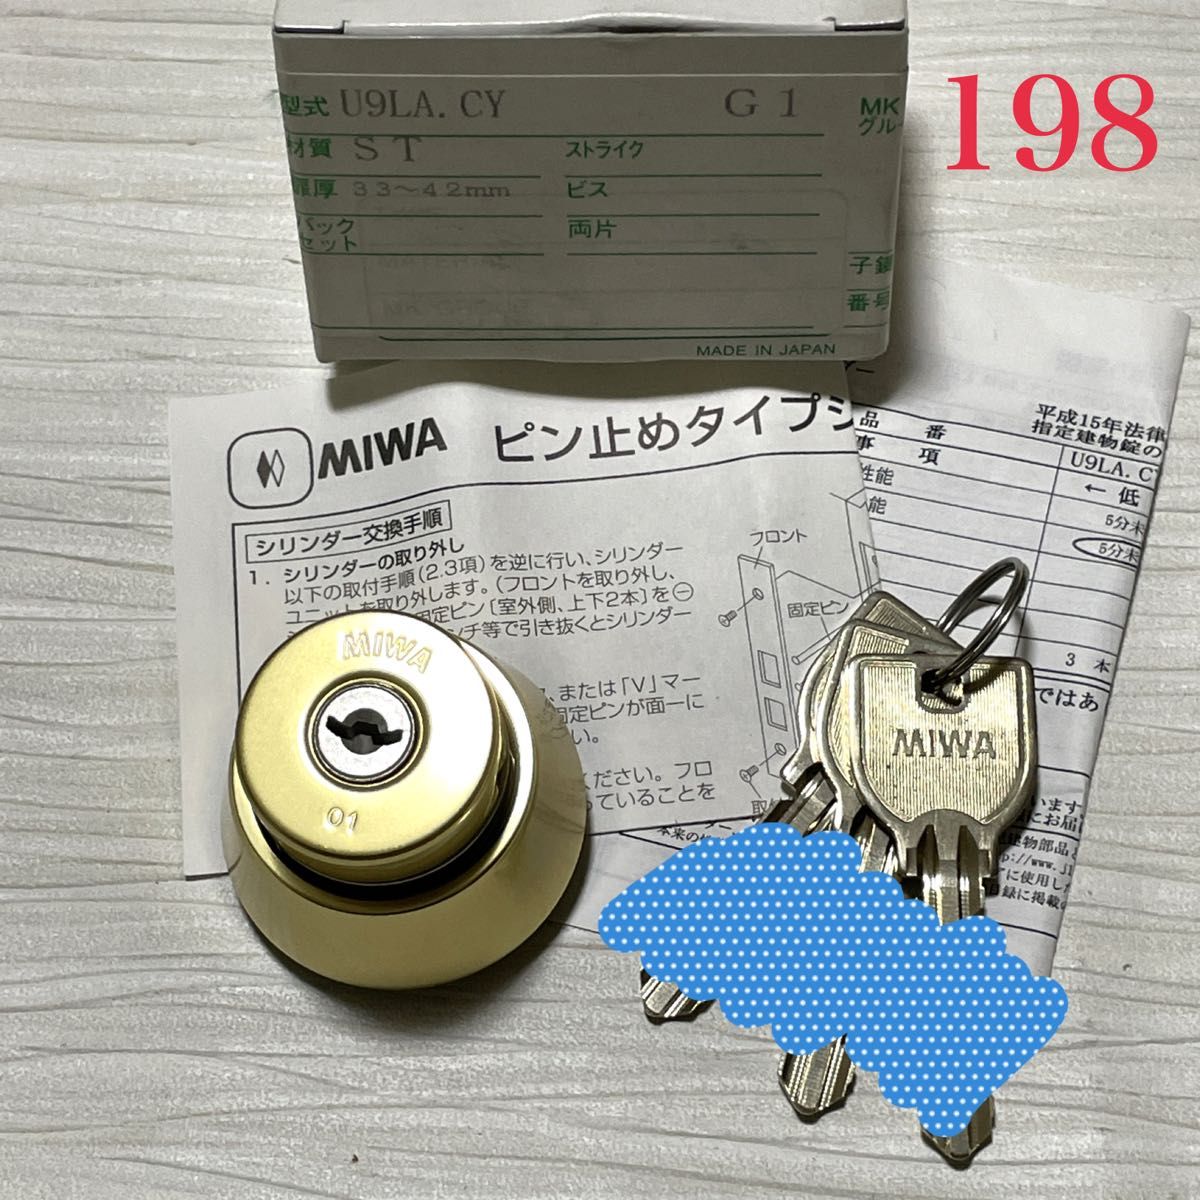 ☆最終特価☆【198】MIWA 美和ロック U9 LA.CY(LA BS) キー３本